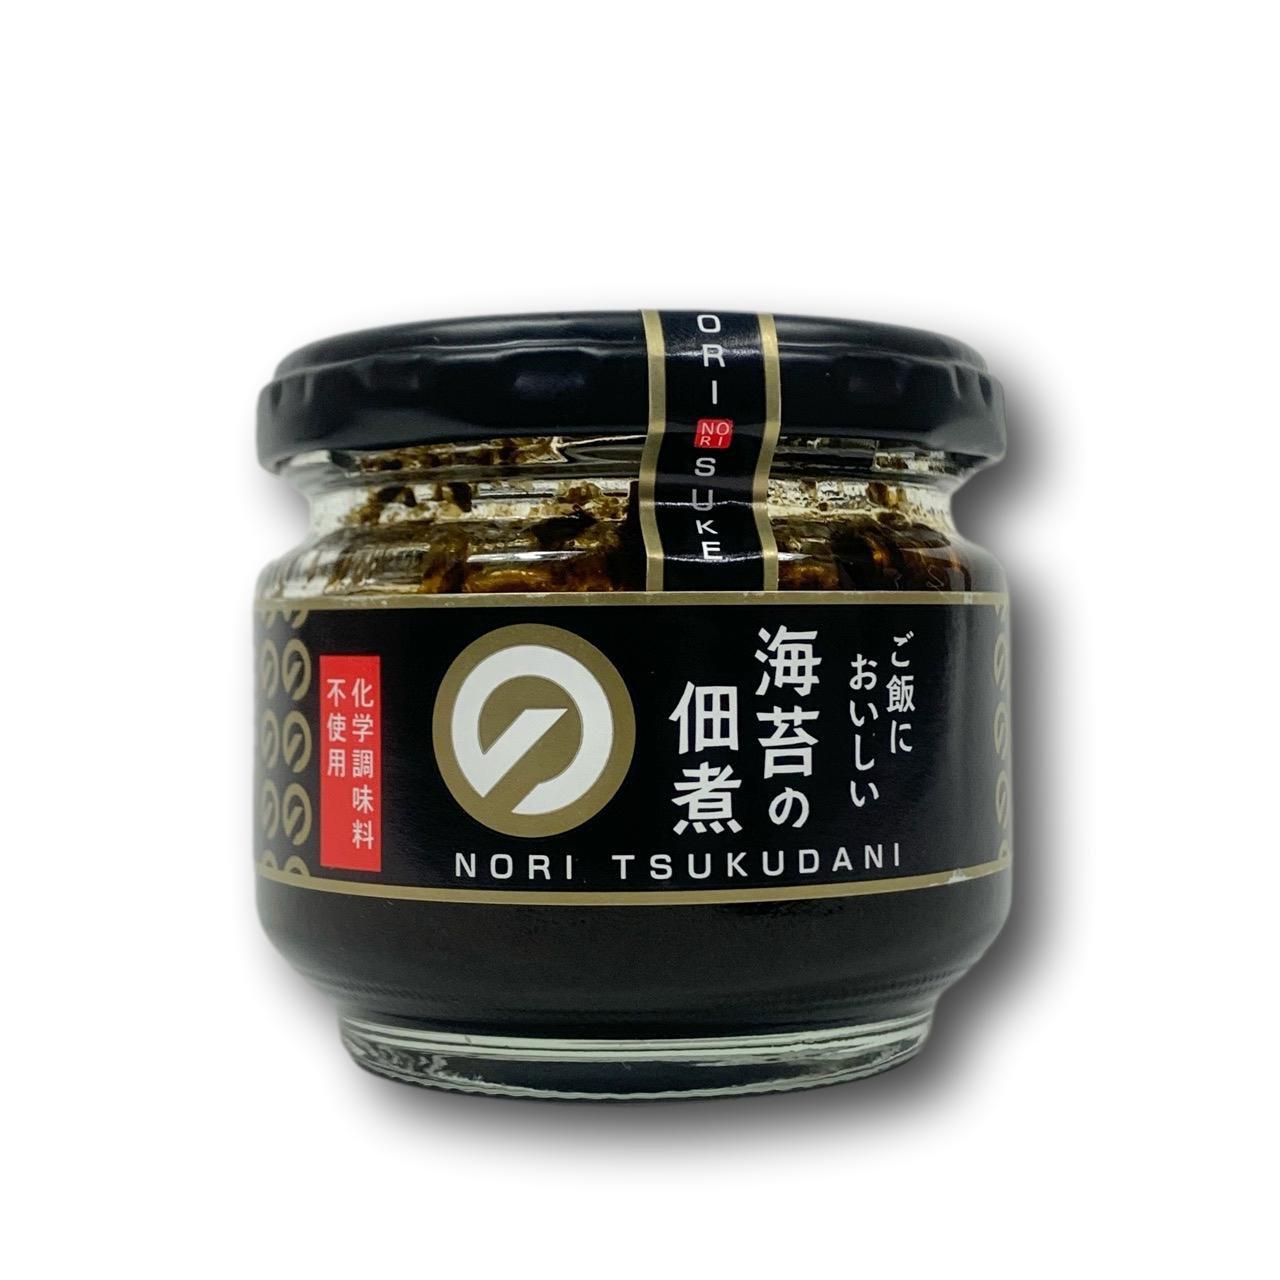 Daihoku Nori Tsukudani Seasoned Nori Seaweed Paste 90g